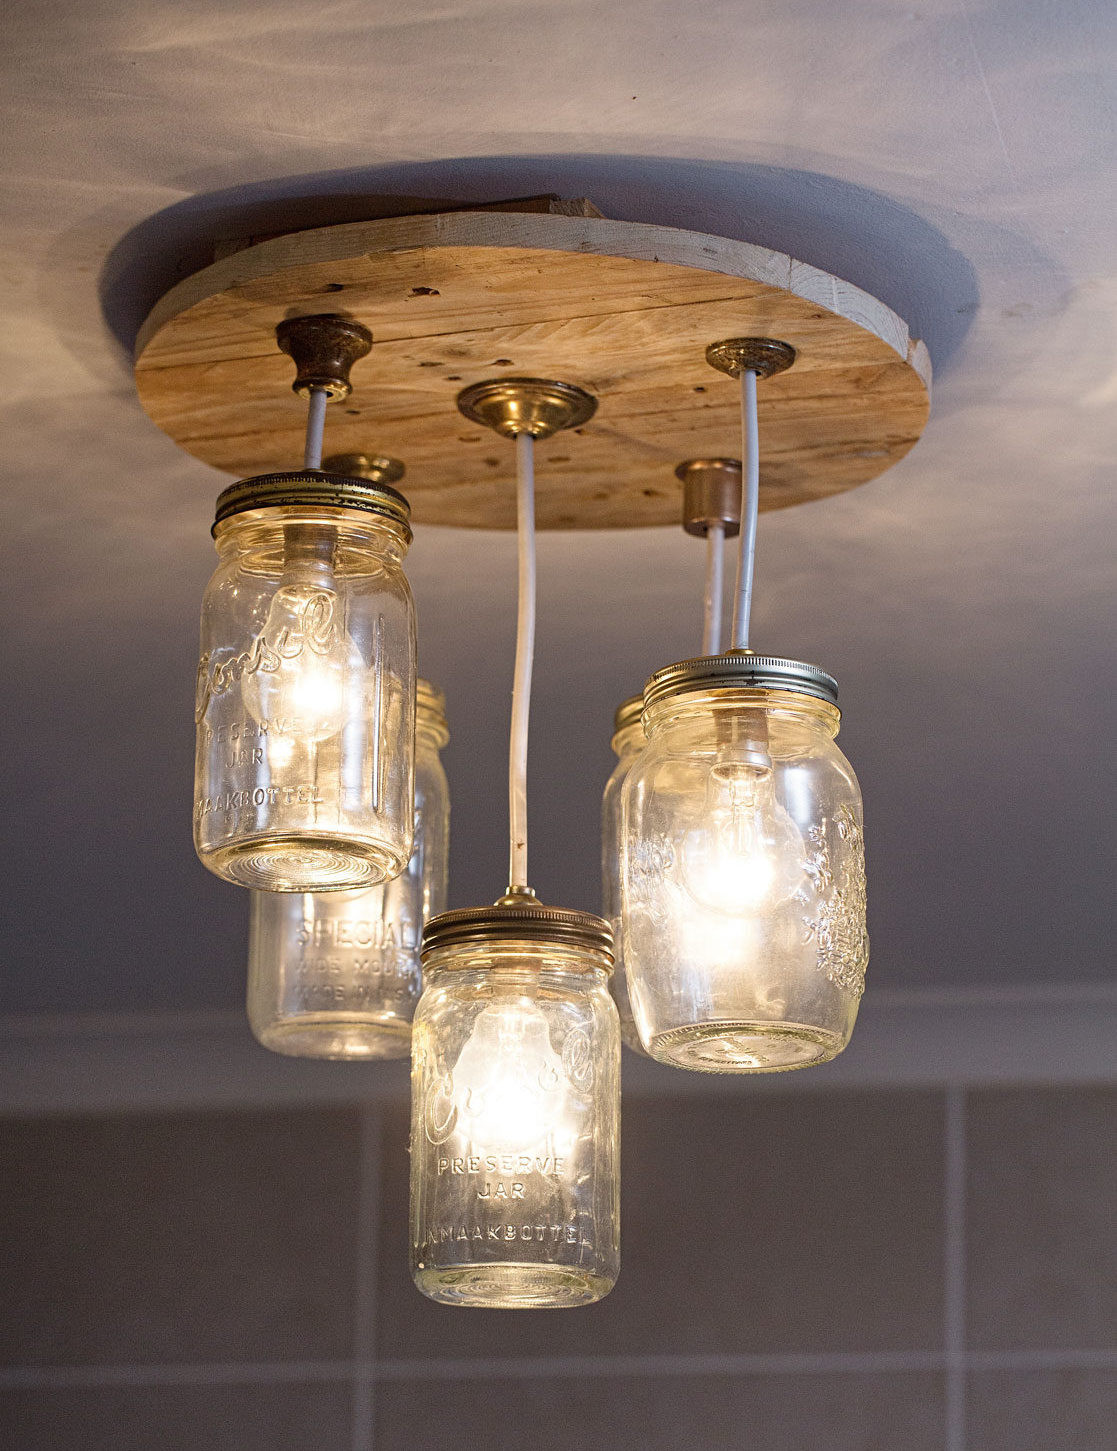 Best ideas about DIY Mason Jar Chandelier
. Save or Pin DIY Mason jar chandelier Now.